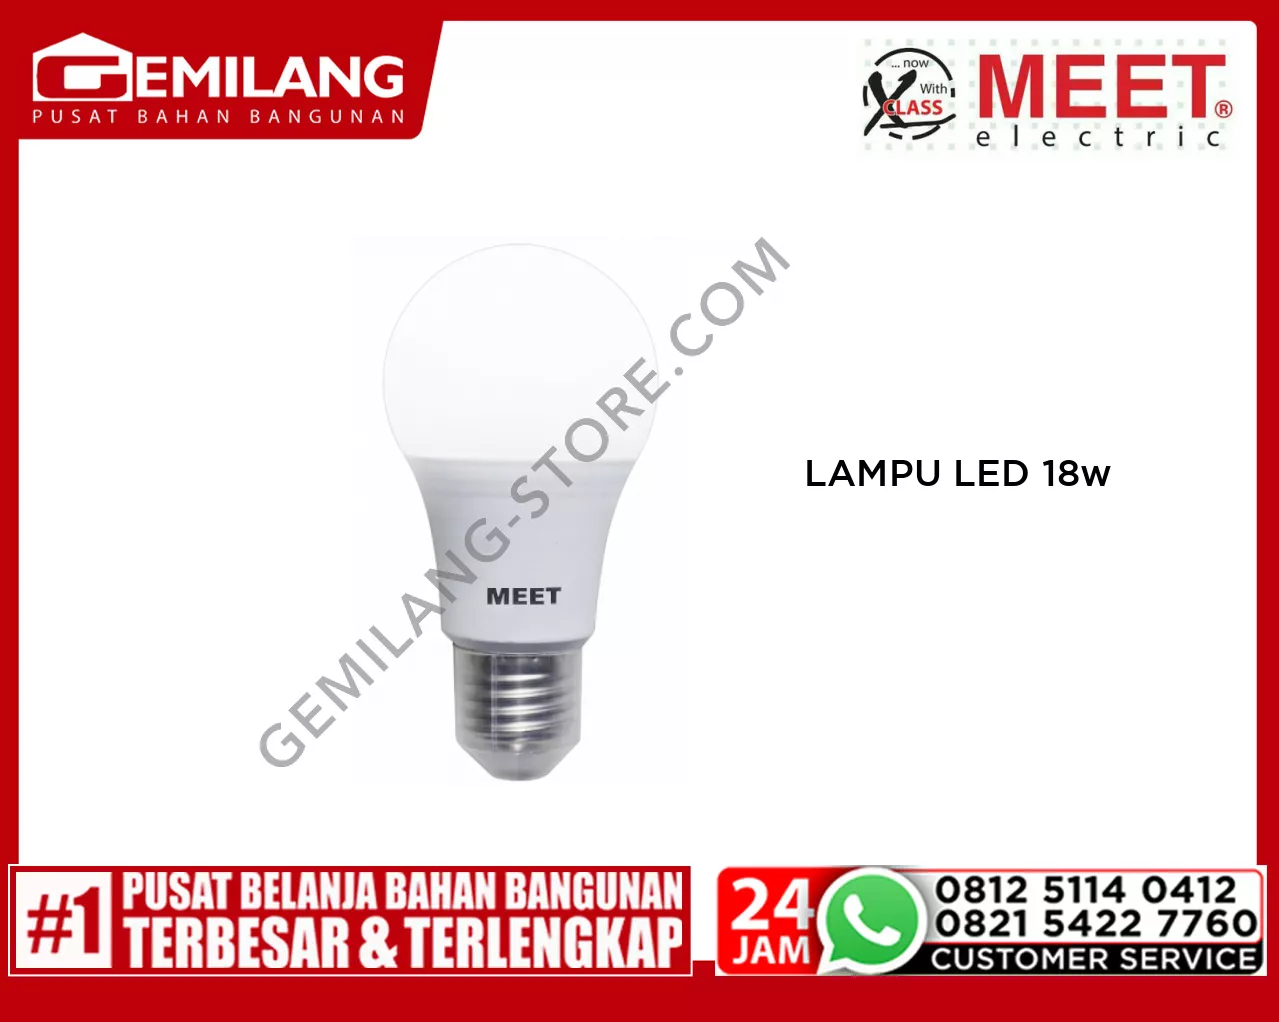 MEET LAMPU LED CLASSIC 18w